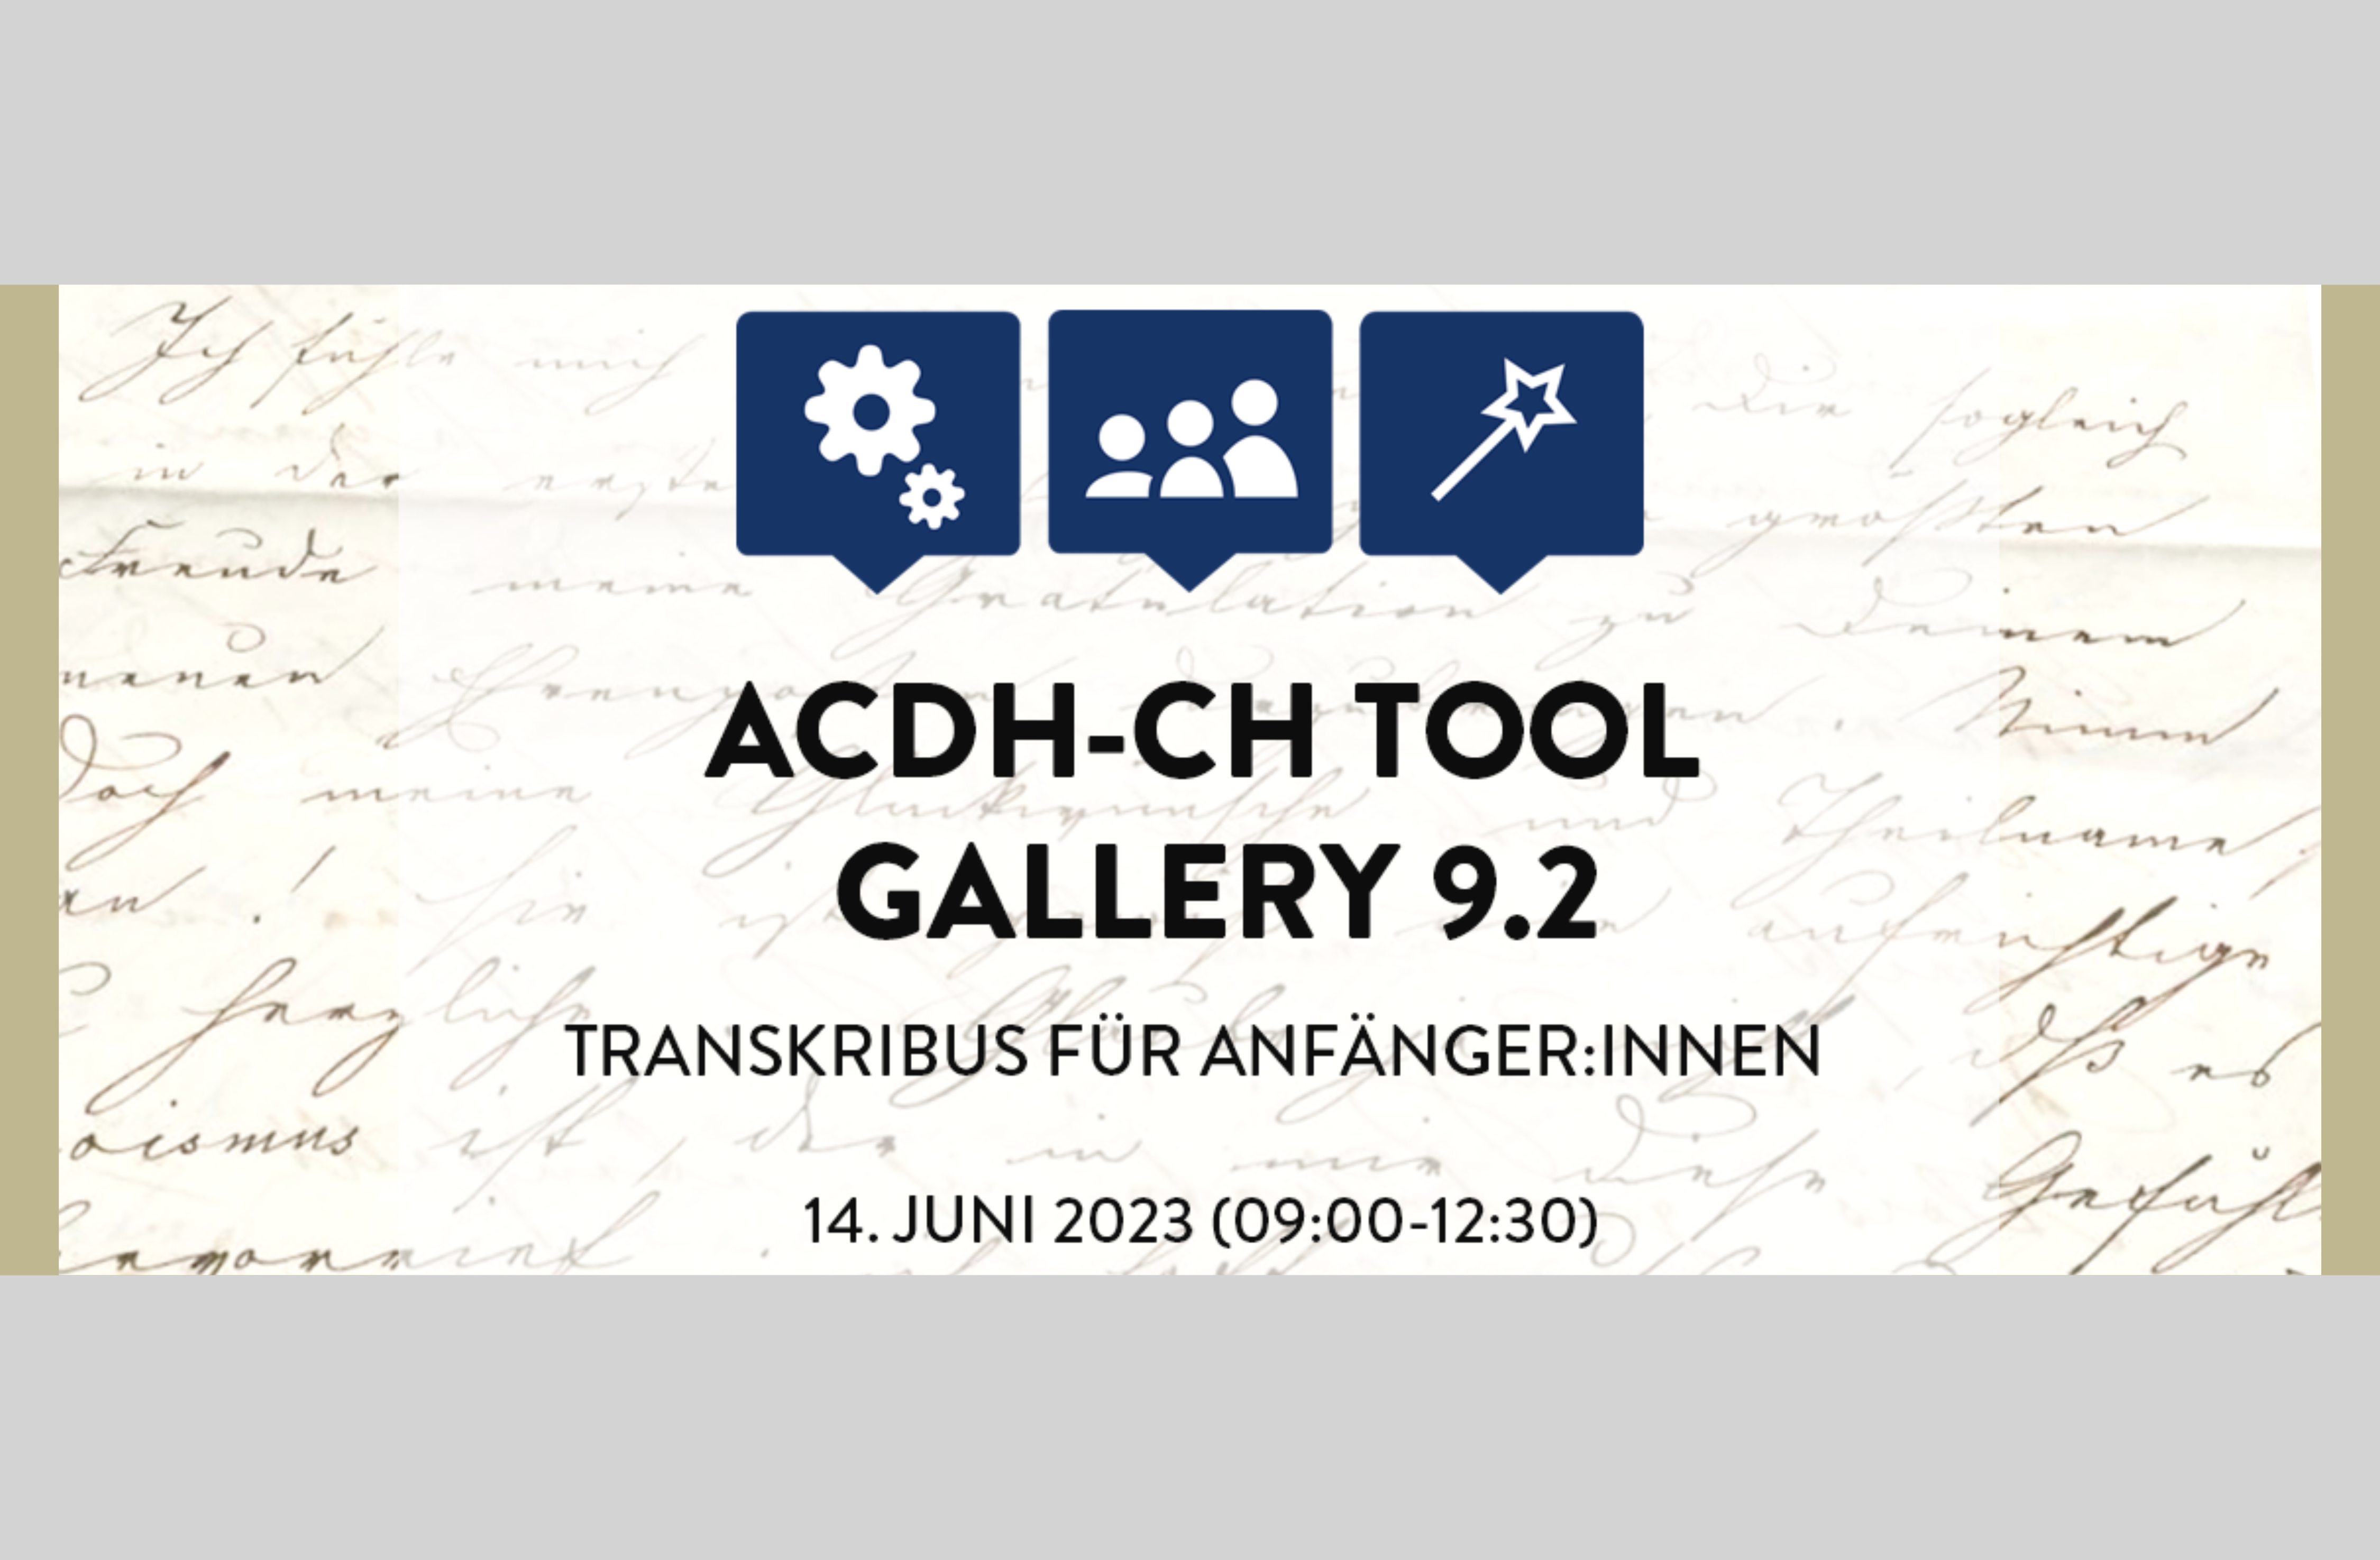 ACDH-CH Tool Gallery 9.2: Transkribus für AnfängerInnen